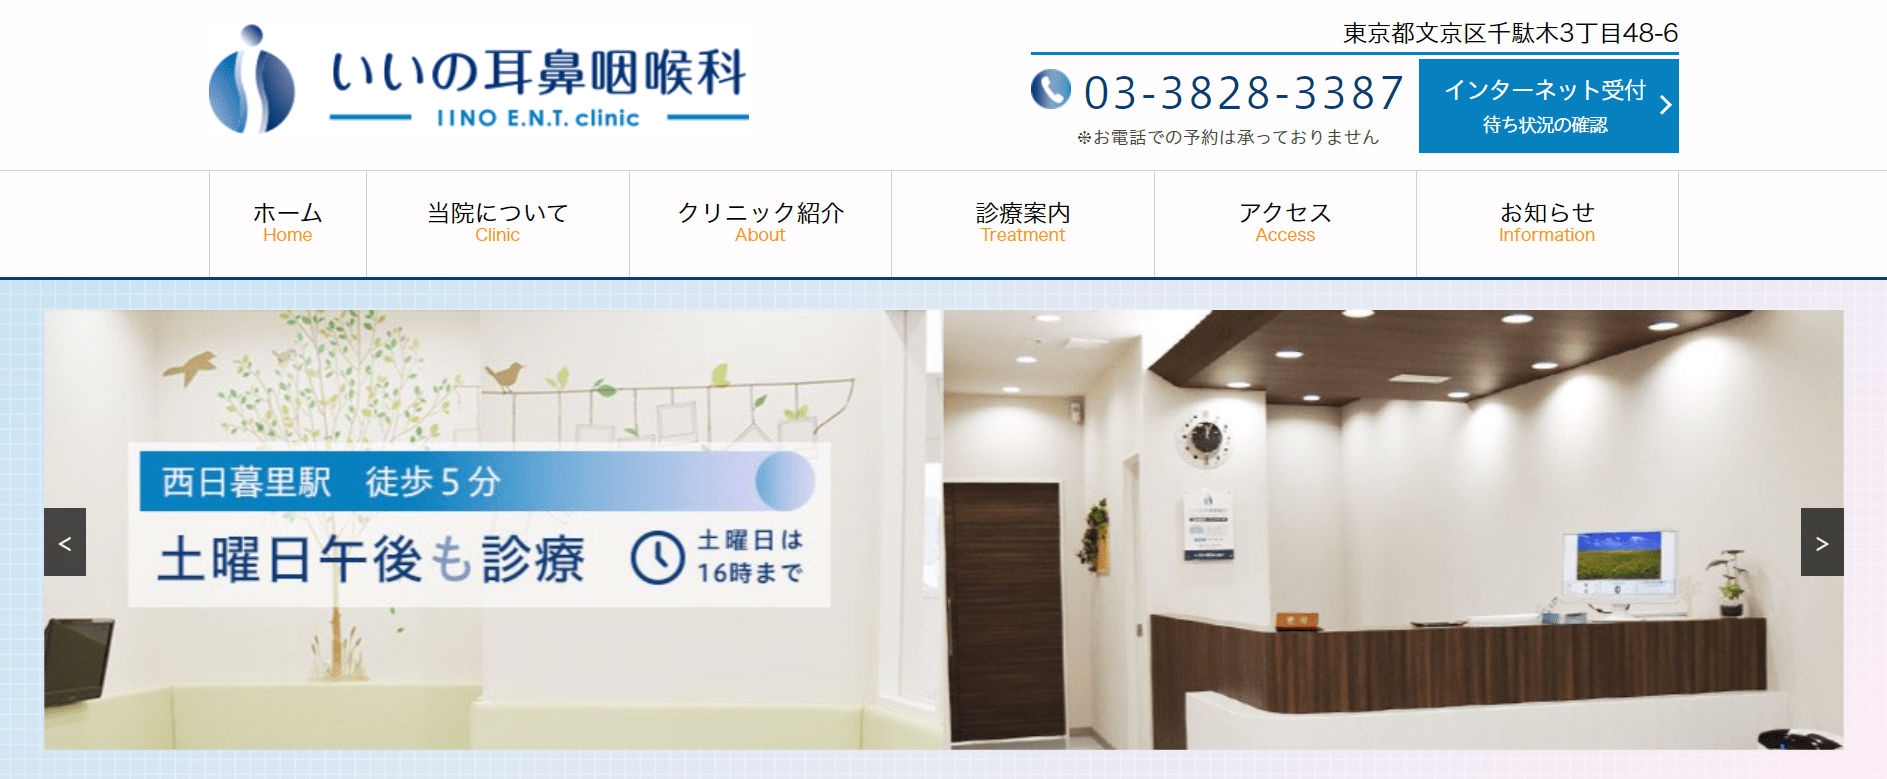 東京都で評判の耳鼻咽喉科クリニックおすすめ10選 いいの耳鼻咽喉科